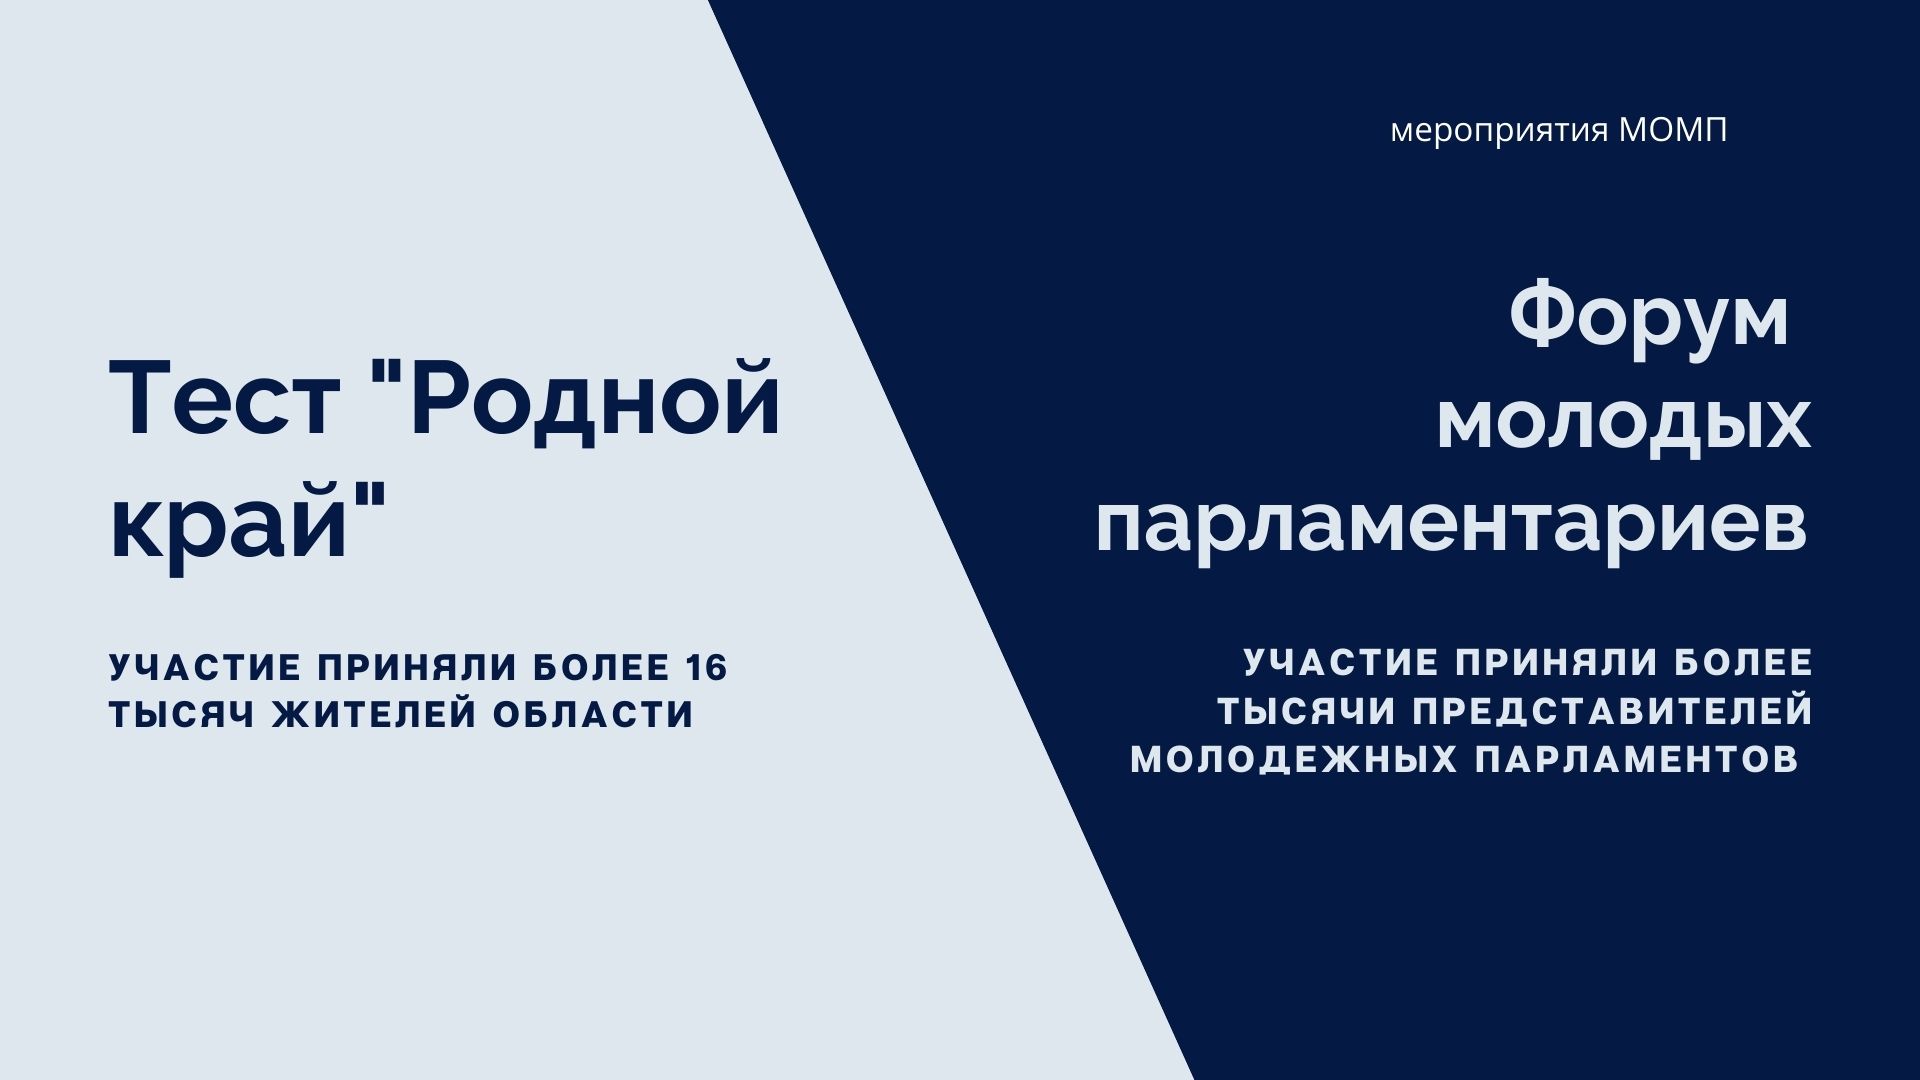 Итоги VI созыва МОД: Московский областной молодёжный парламент разработал за пять лет 19 законопроектов